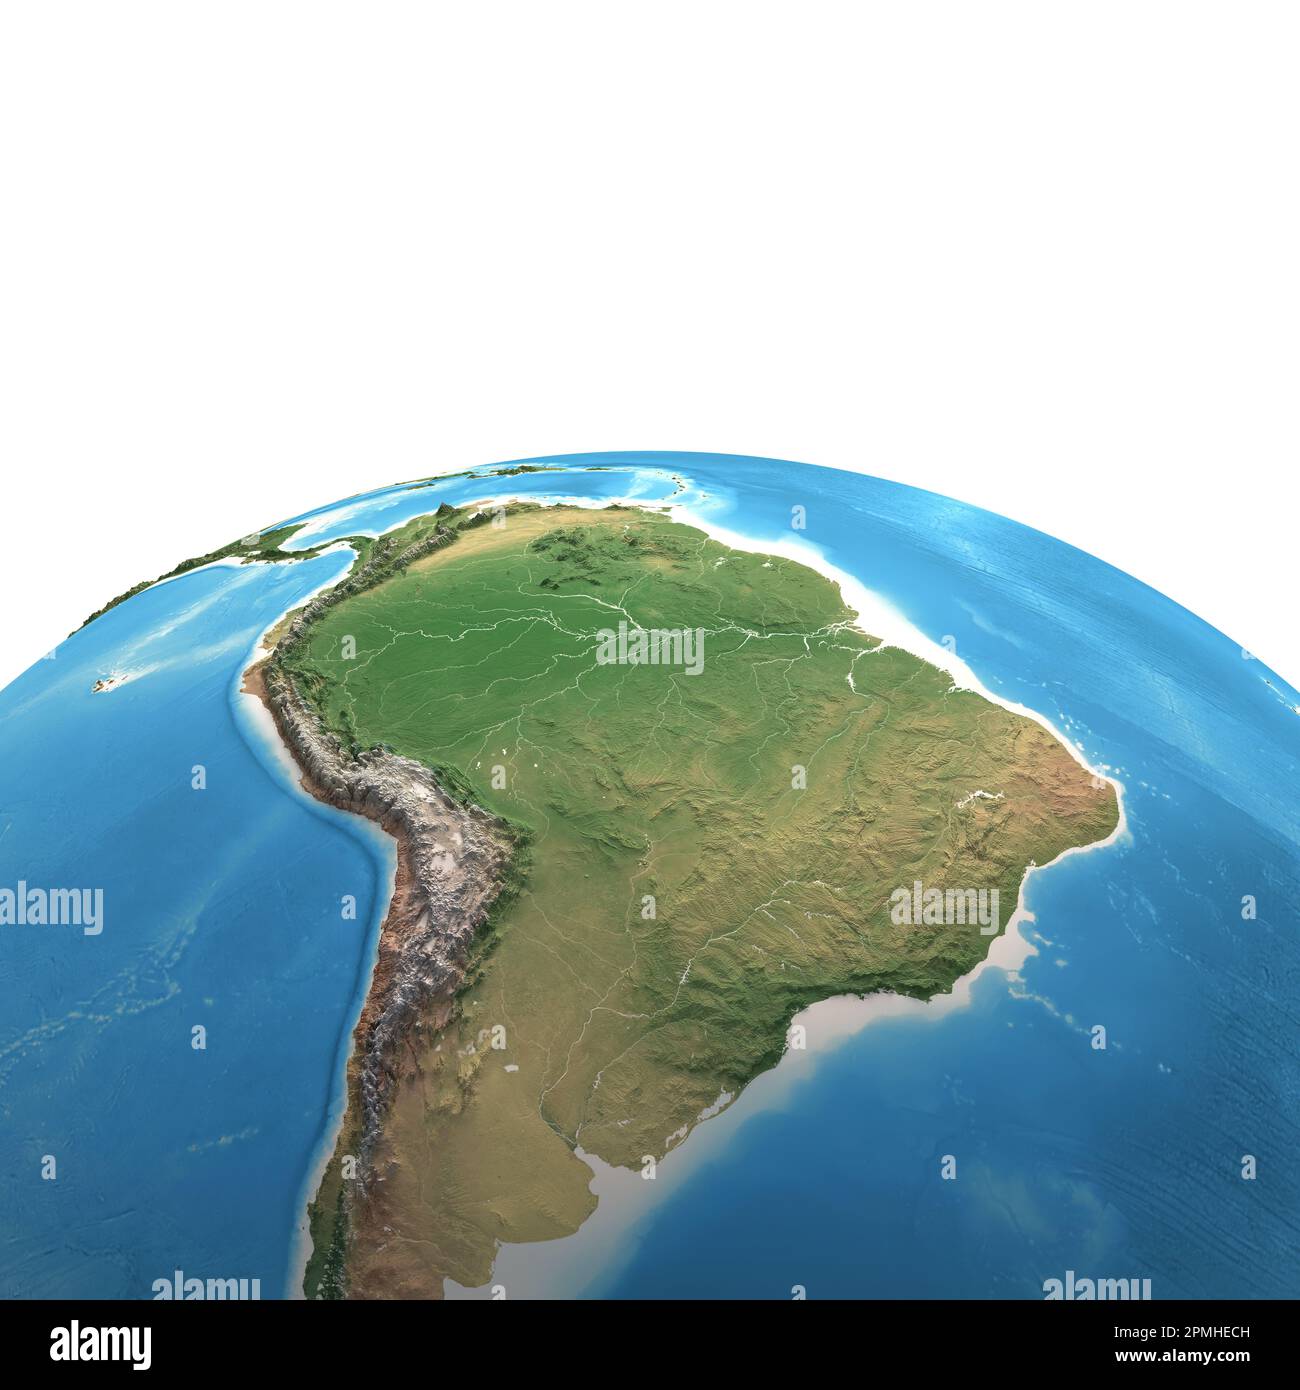 Hochauflösende Satellitenansicht des Planeten Erde mit Fokus auf Südamerika, Amazonas Regenwald, Andes Cordillera - Elemente, die von der NASA bereitgestellt wurden Stockfoto